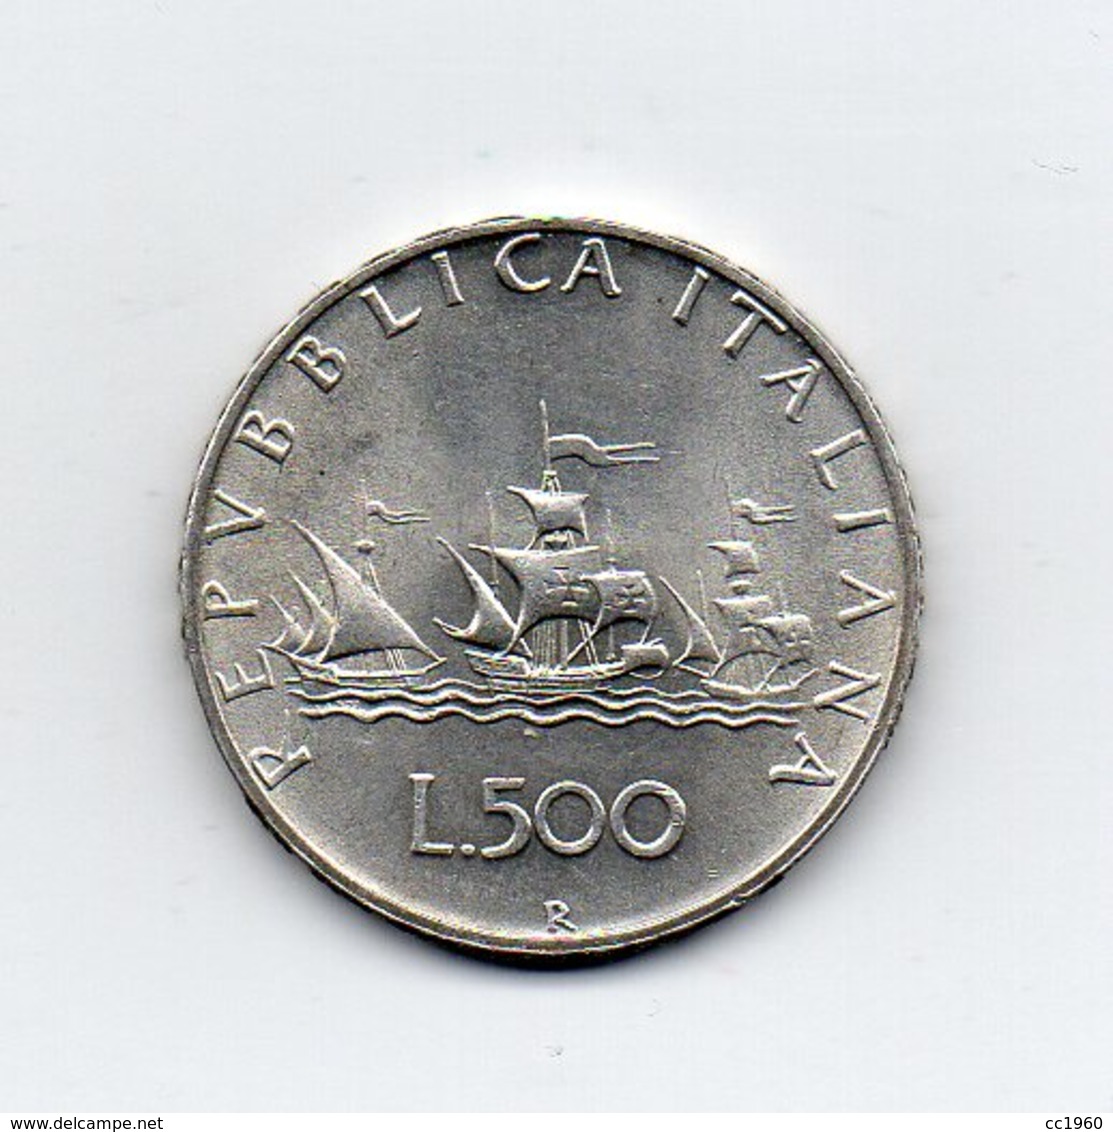 ITALIA - 1965 - 500 Lire "Caravelle" - Argento 835 - Peso 11 Grammi - (MW2156) - 500 Lire